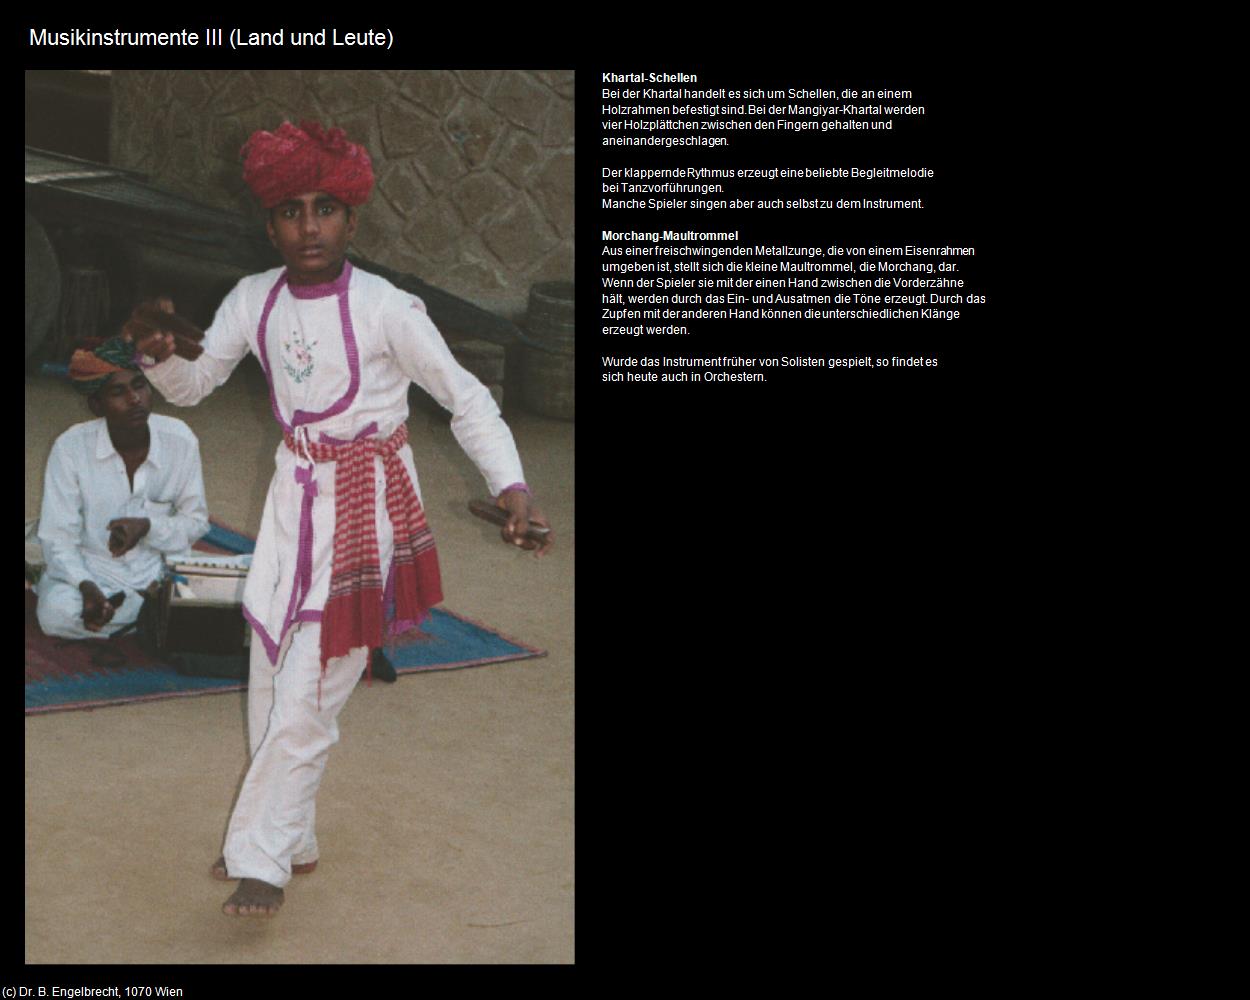 Musikinstrumente III (Rajasthan-Musik) in Rajasthan - das Land der Könige